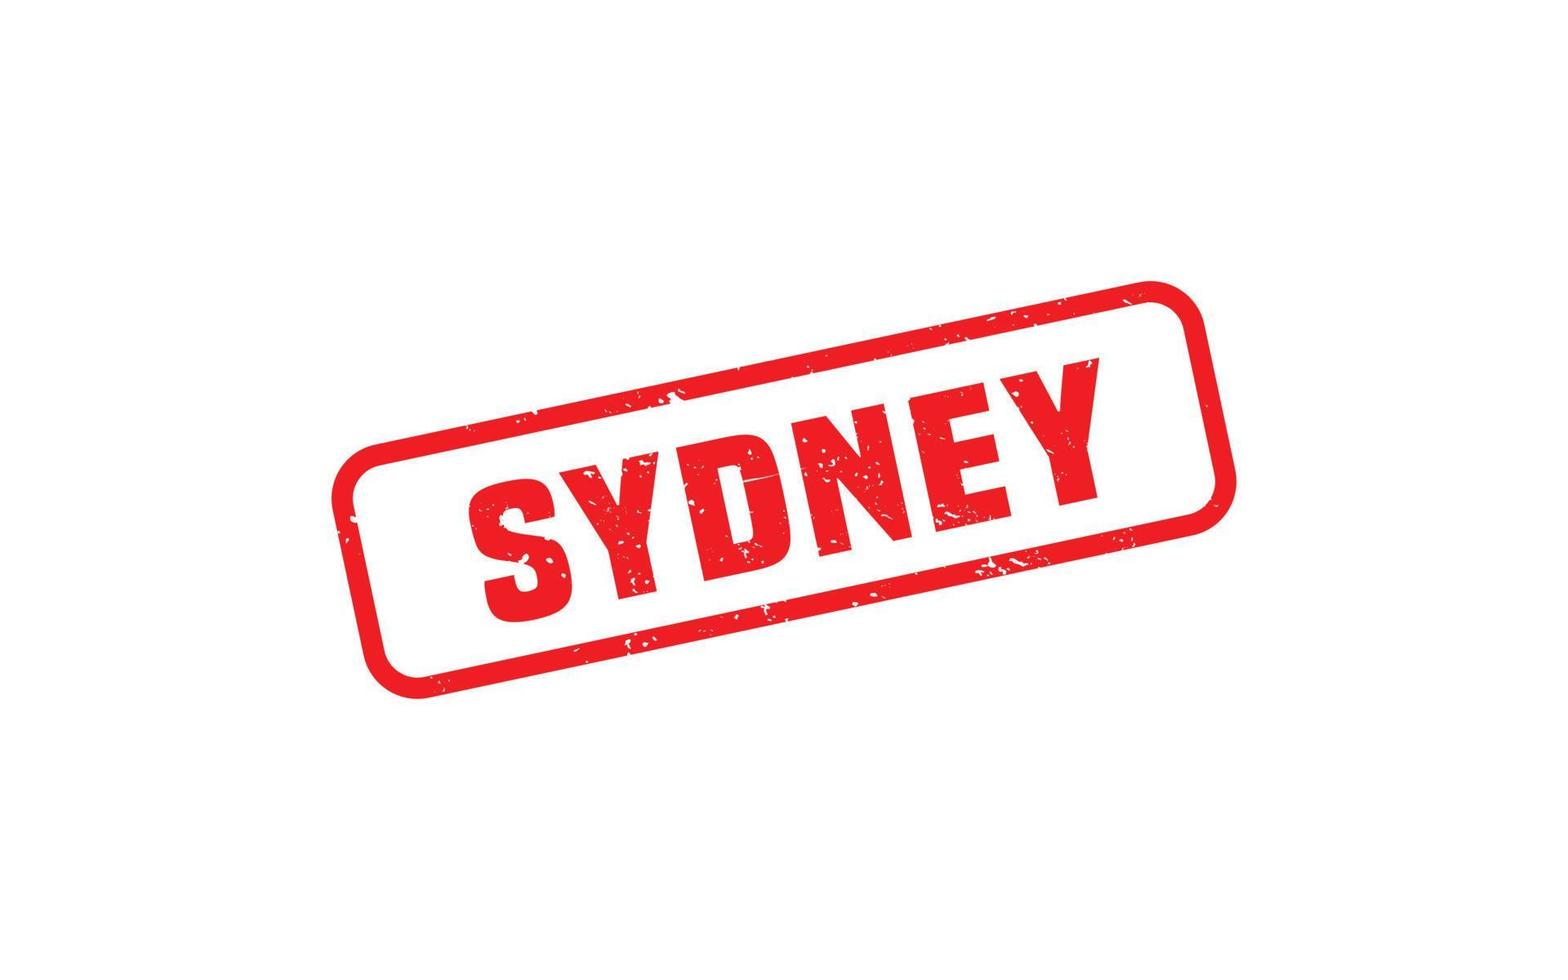 sydney Australia gomma da cancellare francobollo con grunge stile su bianca sfondo vettore